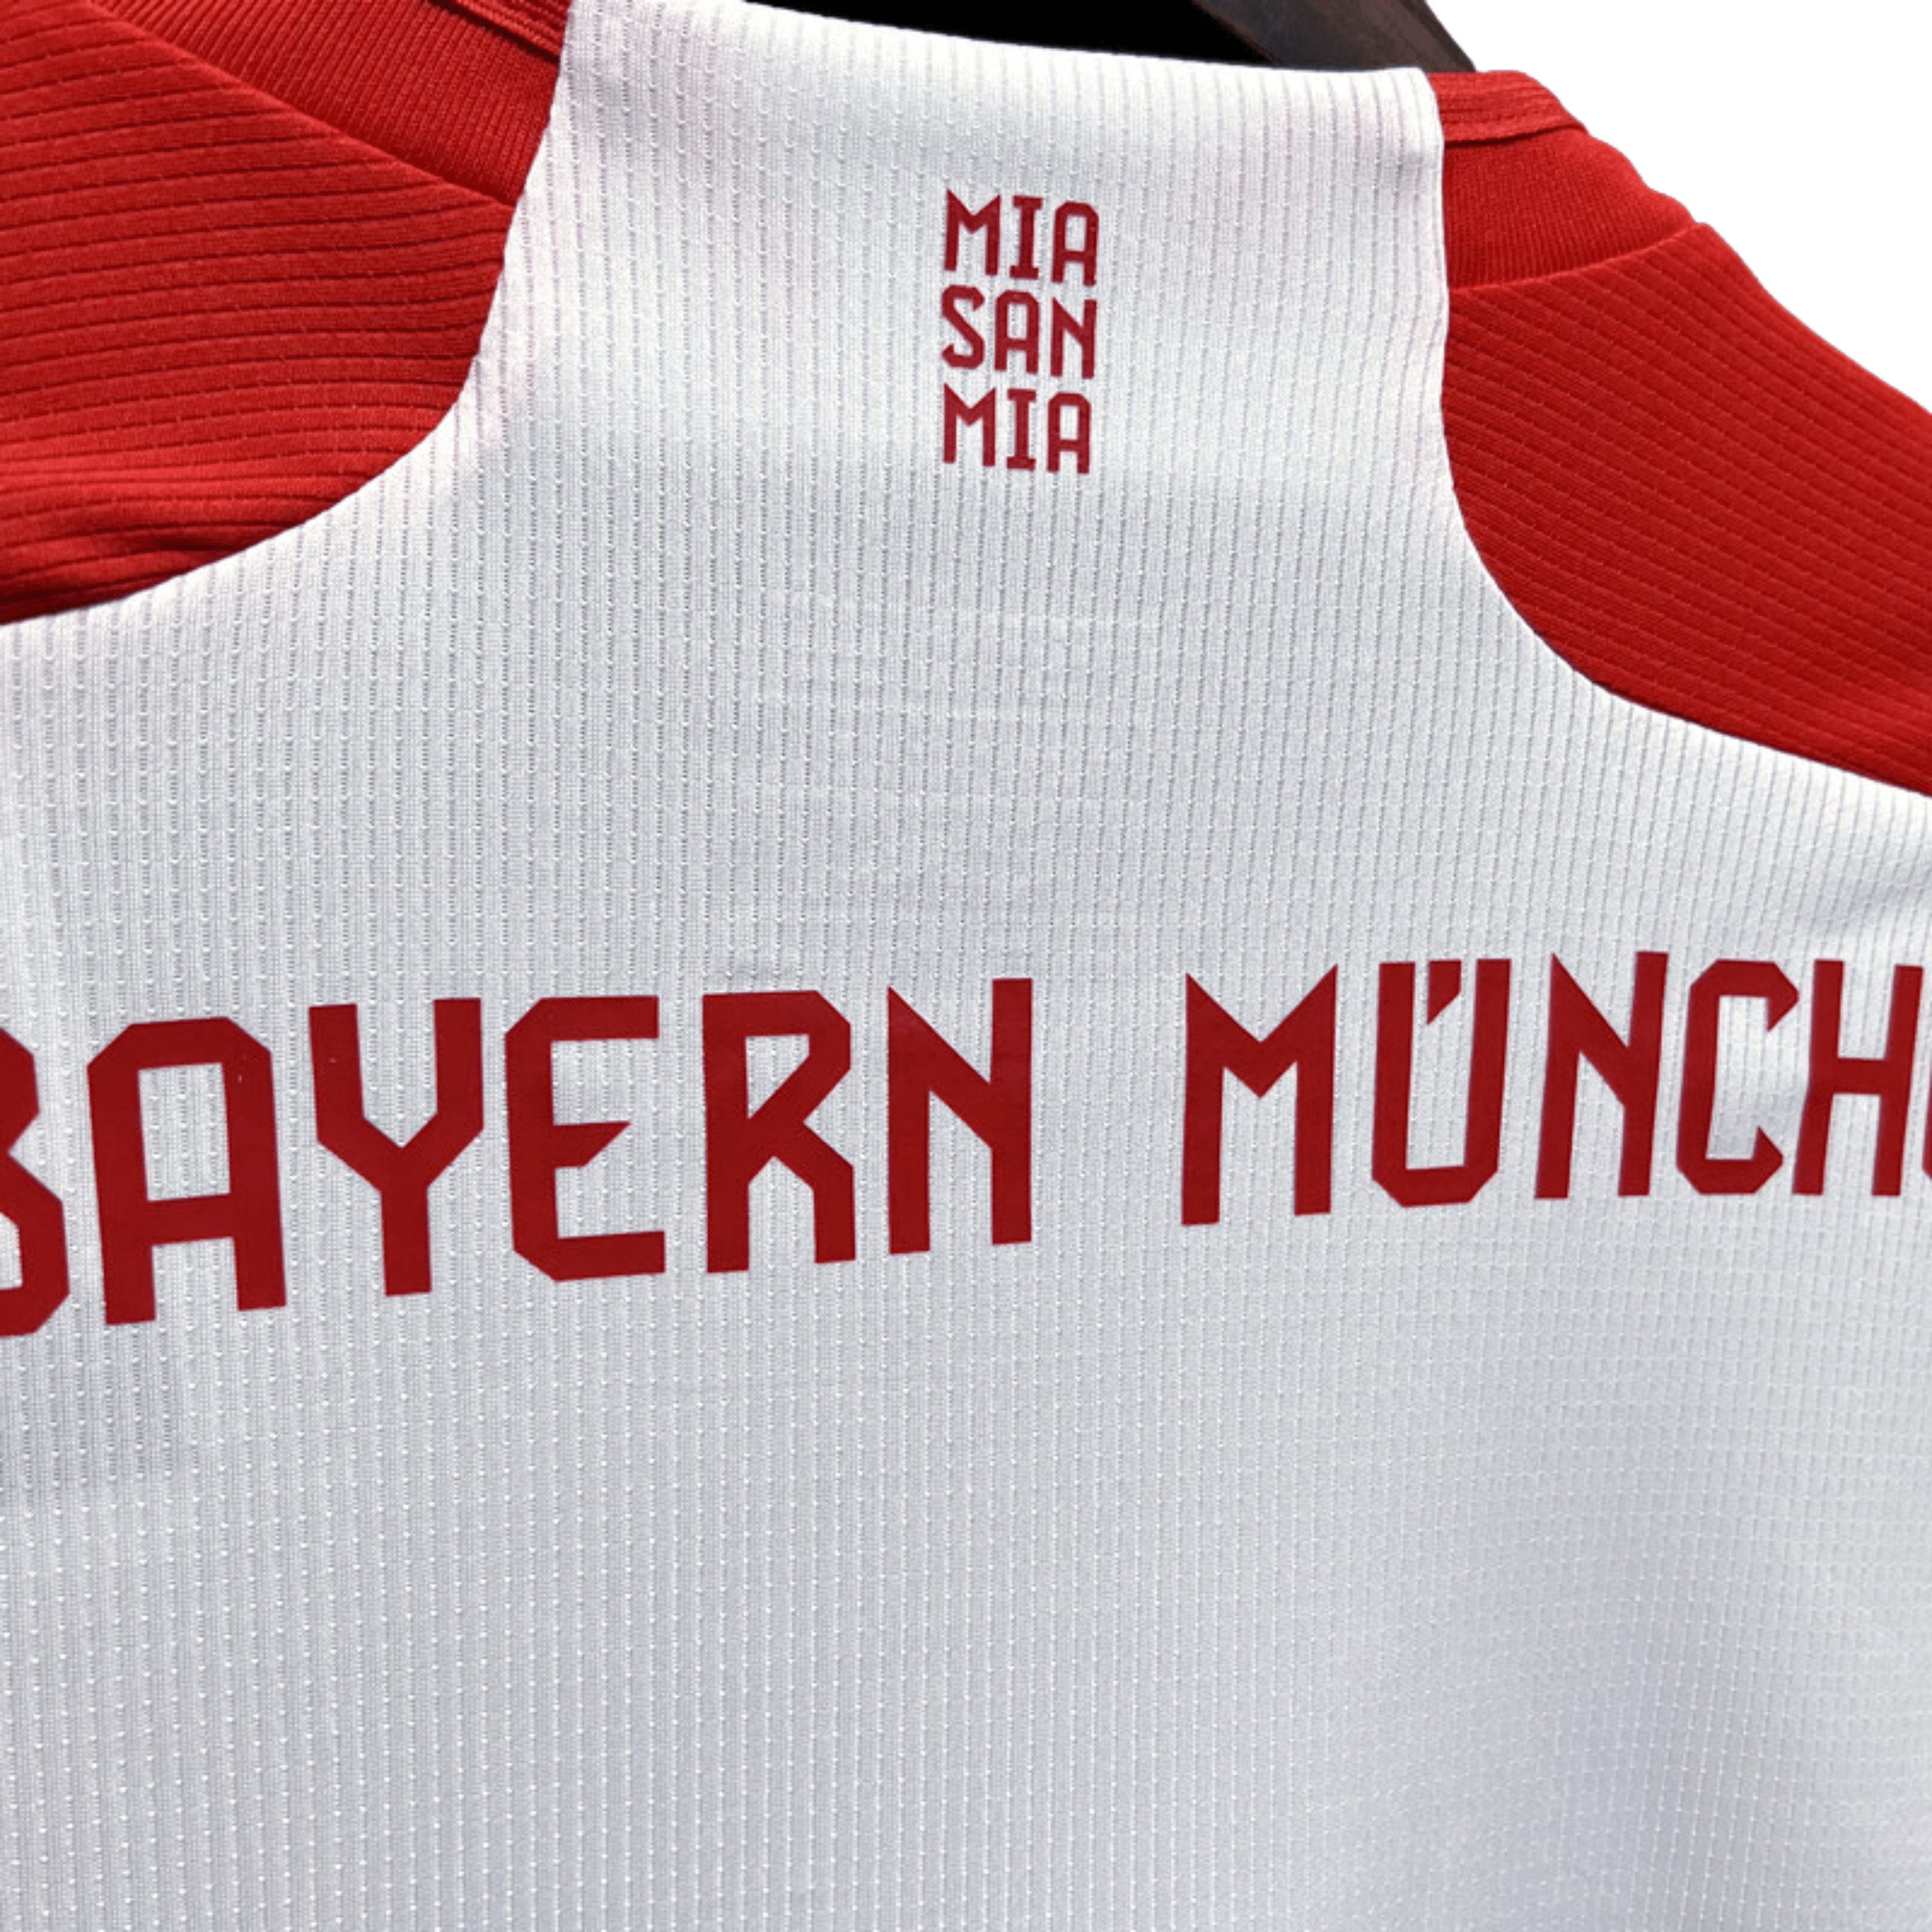 FC Bayern Munich Long Sleeve Home Jersey 23/24